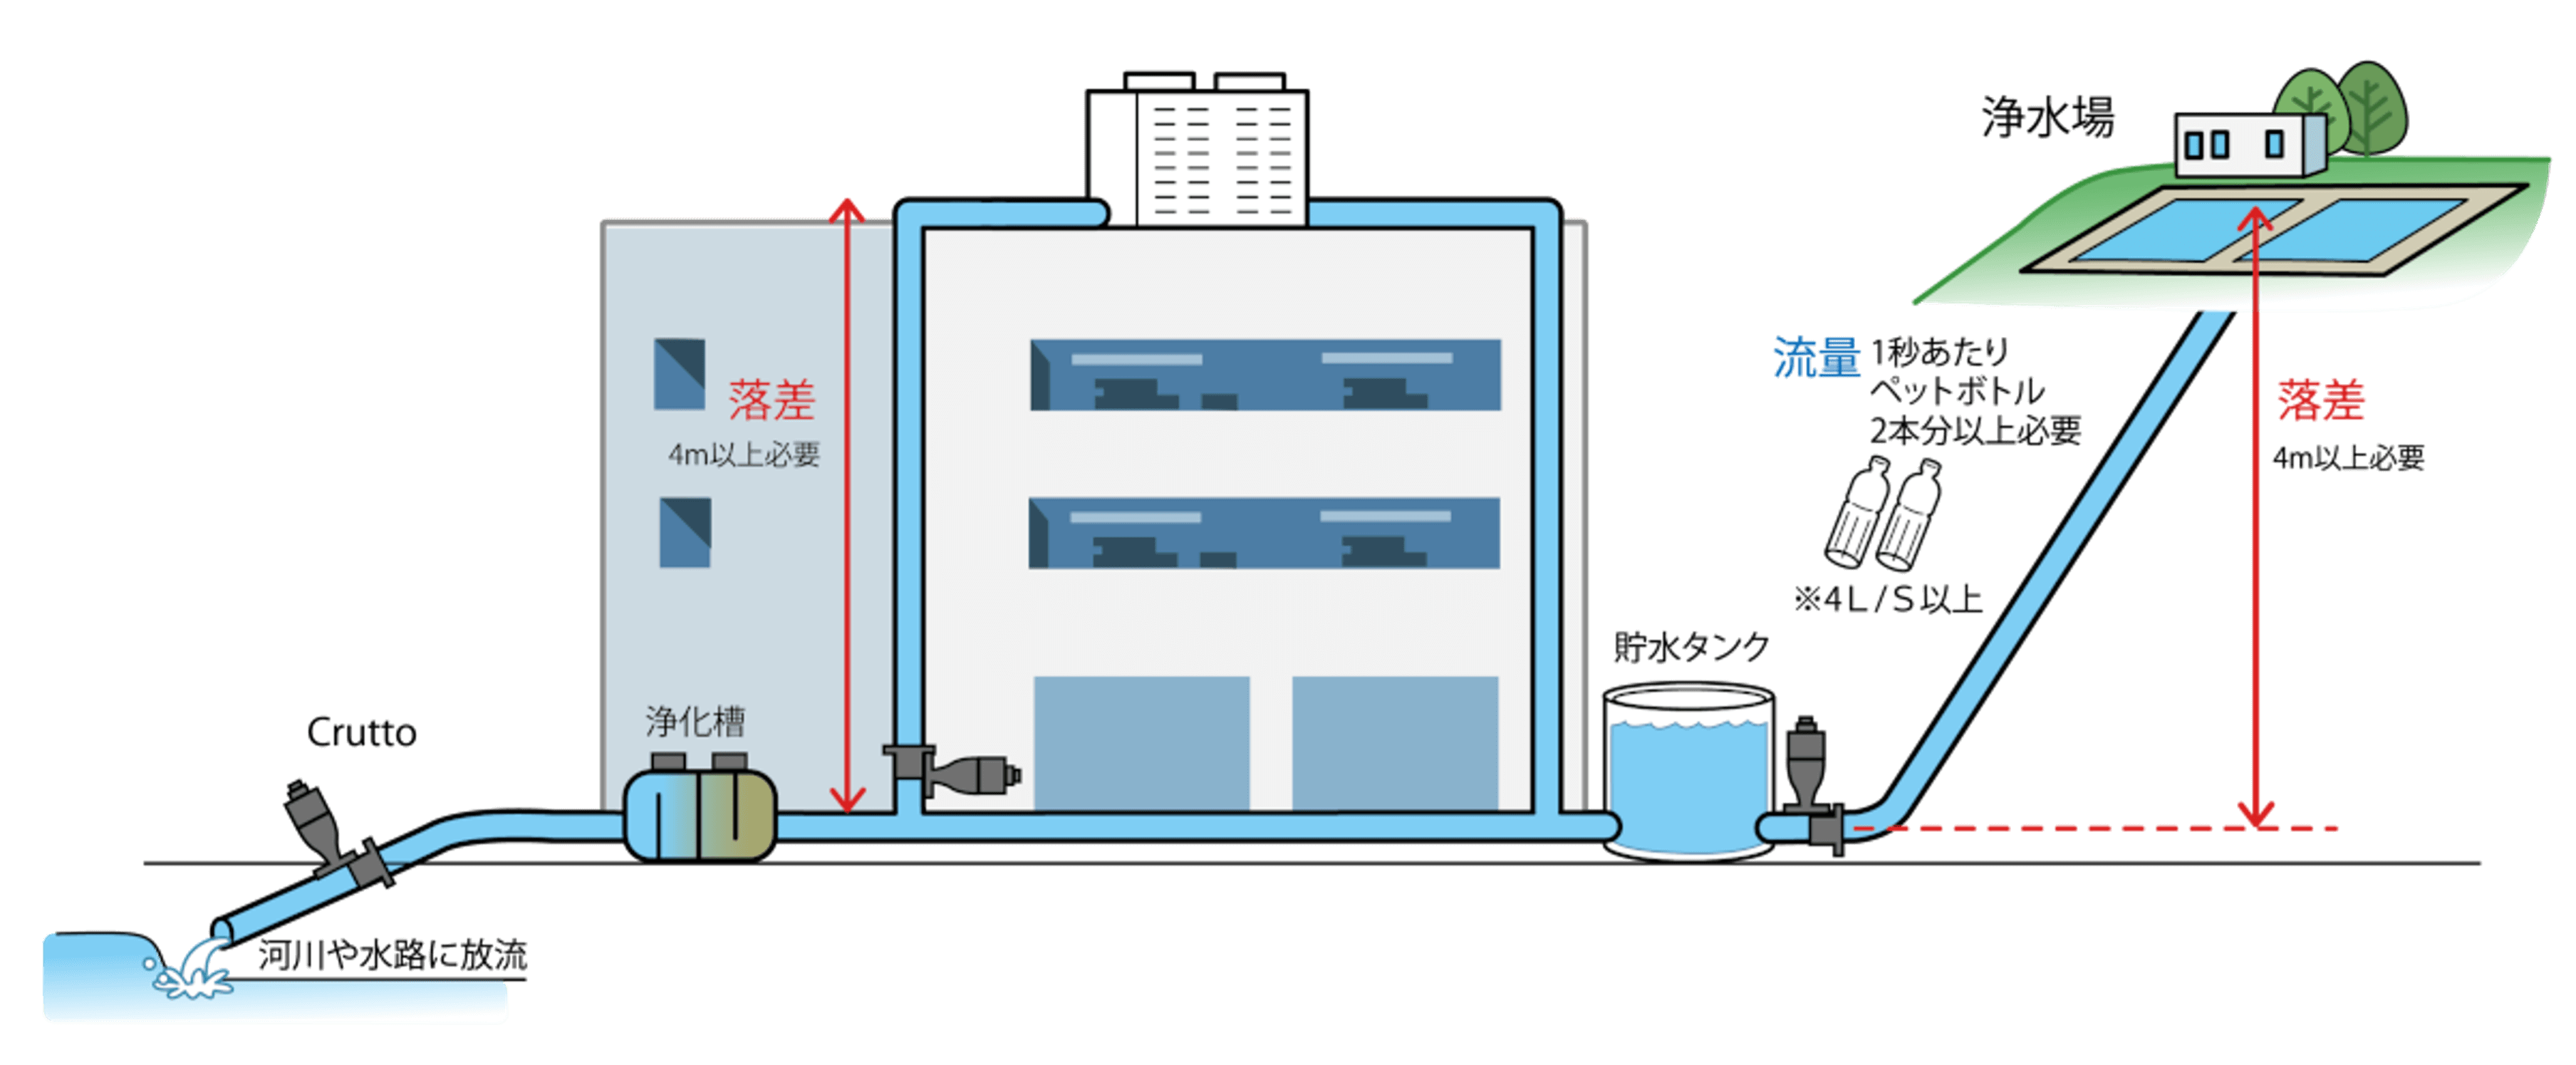 工場でのマイクロ水力発電システムの設置イメージ